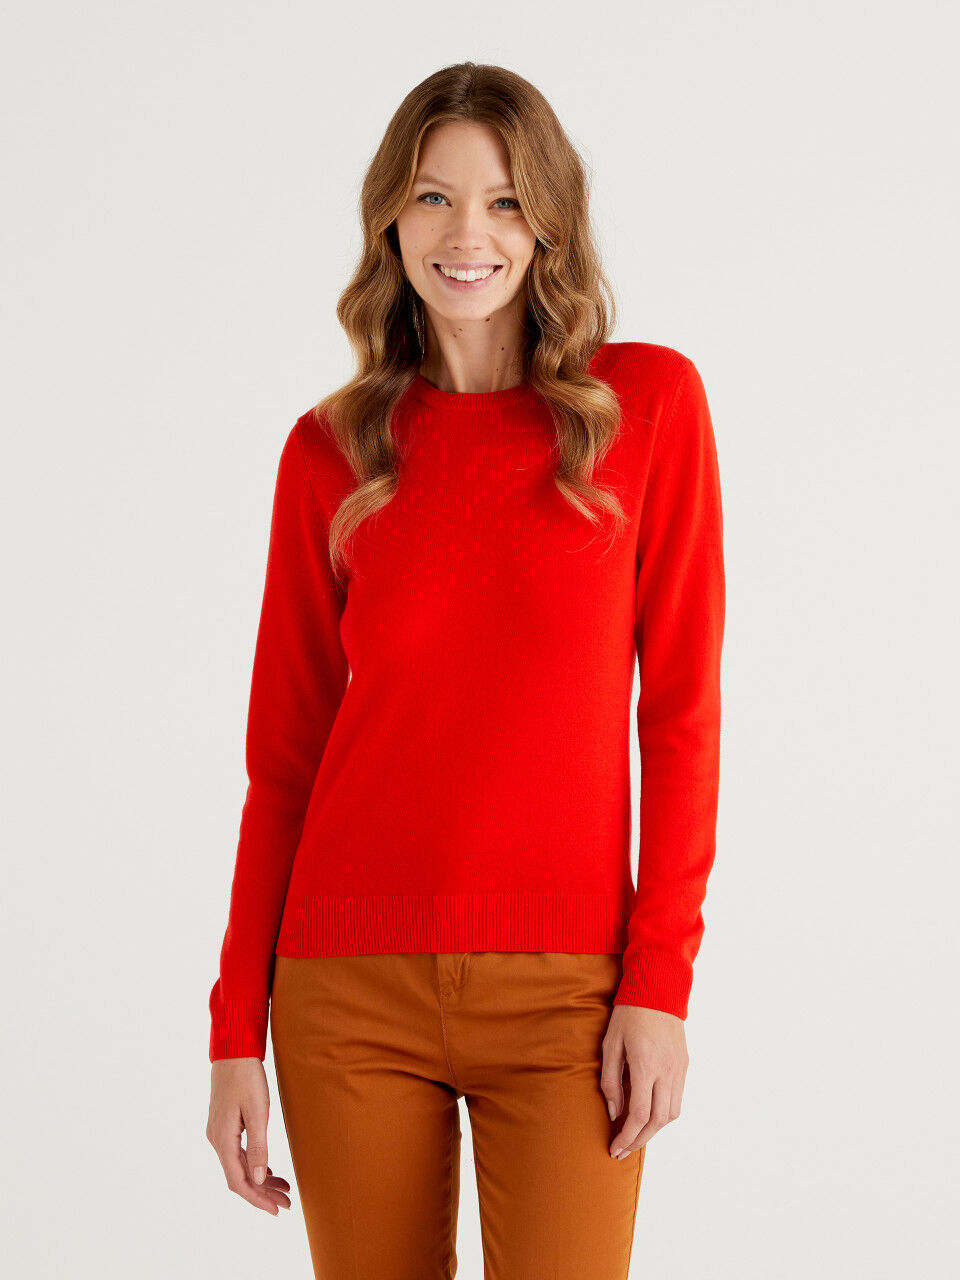 Jersey de cuello redondo rojo coral de lana merina